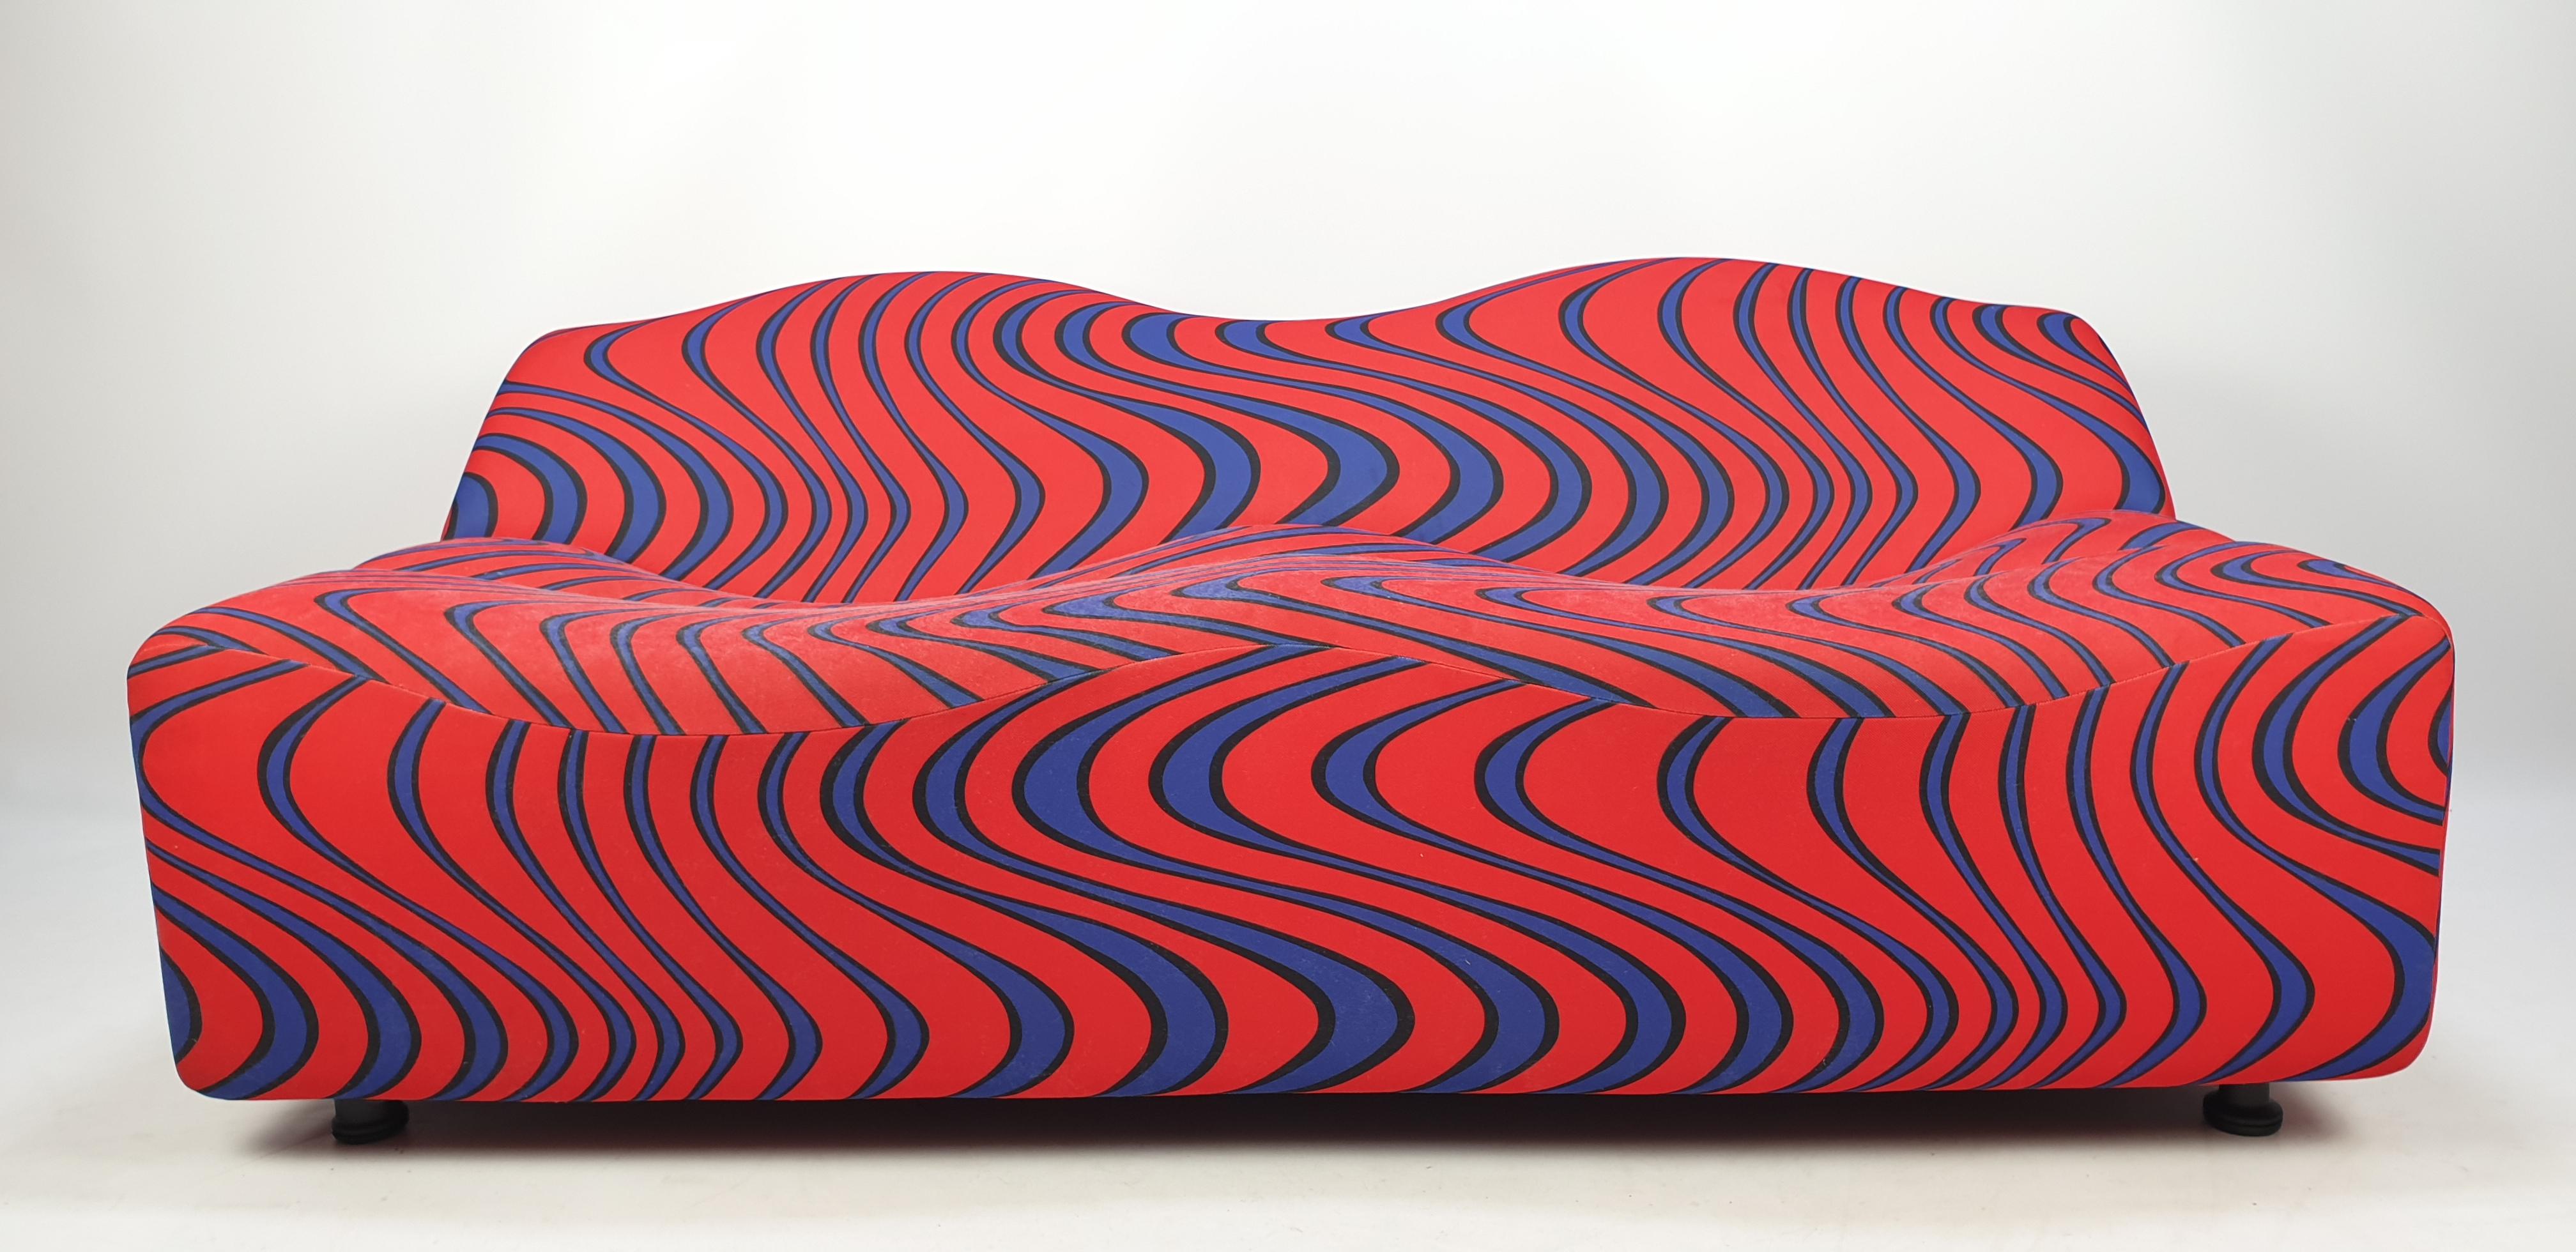 Beeindruckendes skulpturales Zweisitzer-Sofa ABCD, entworfen von Pierre Paulin für Artifort im Jahr 1968. 

Das Sofa besteht aus drei separaten Segmenten, die durch die wellenförmigen Kurven gekennzeichnet sind. 
Die leicht nach unten gewölbten